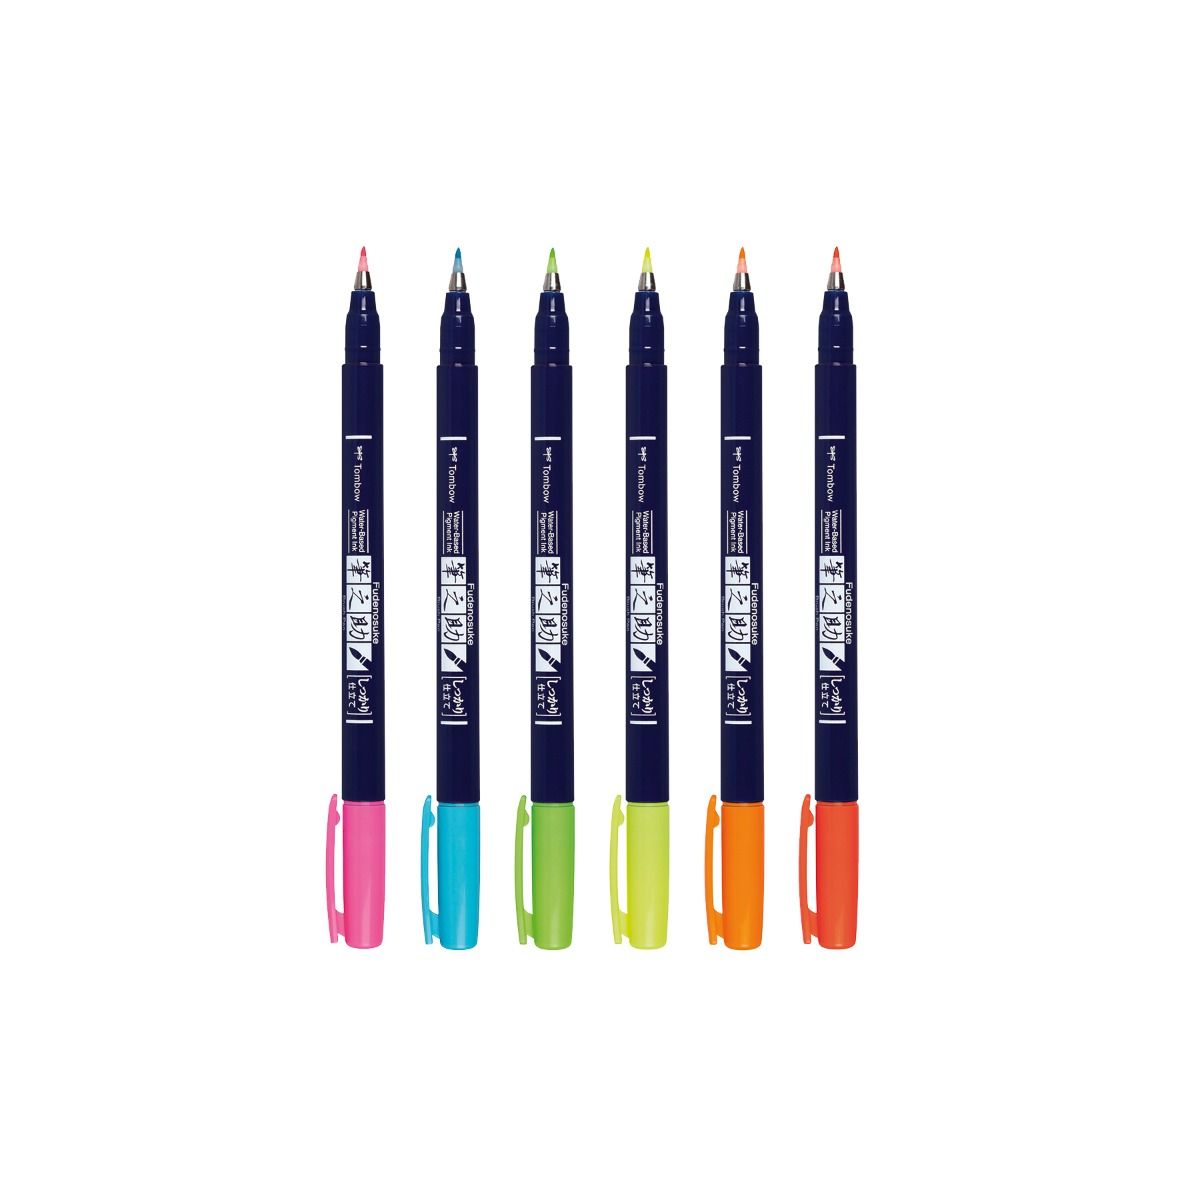 TOMBOW Fudenosuke Brush Pen-Hard-Neon Yellow